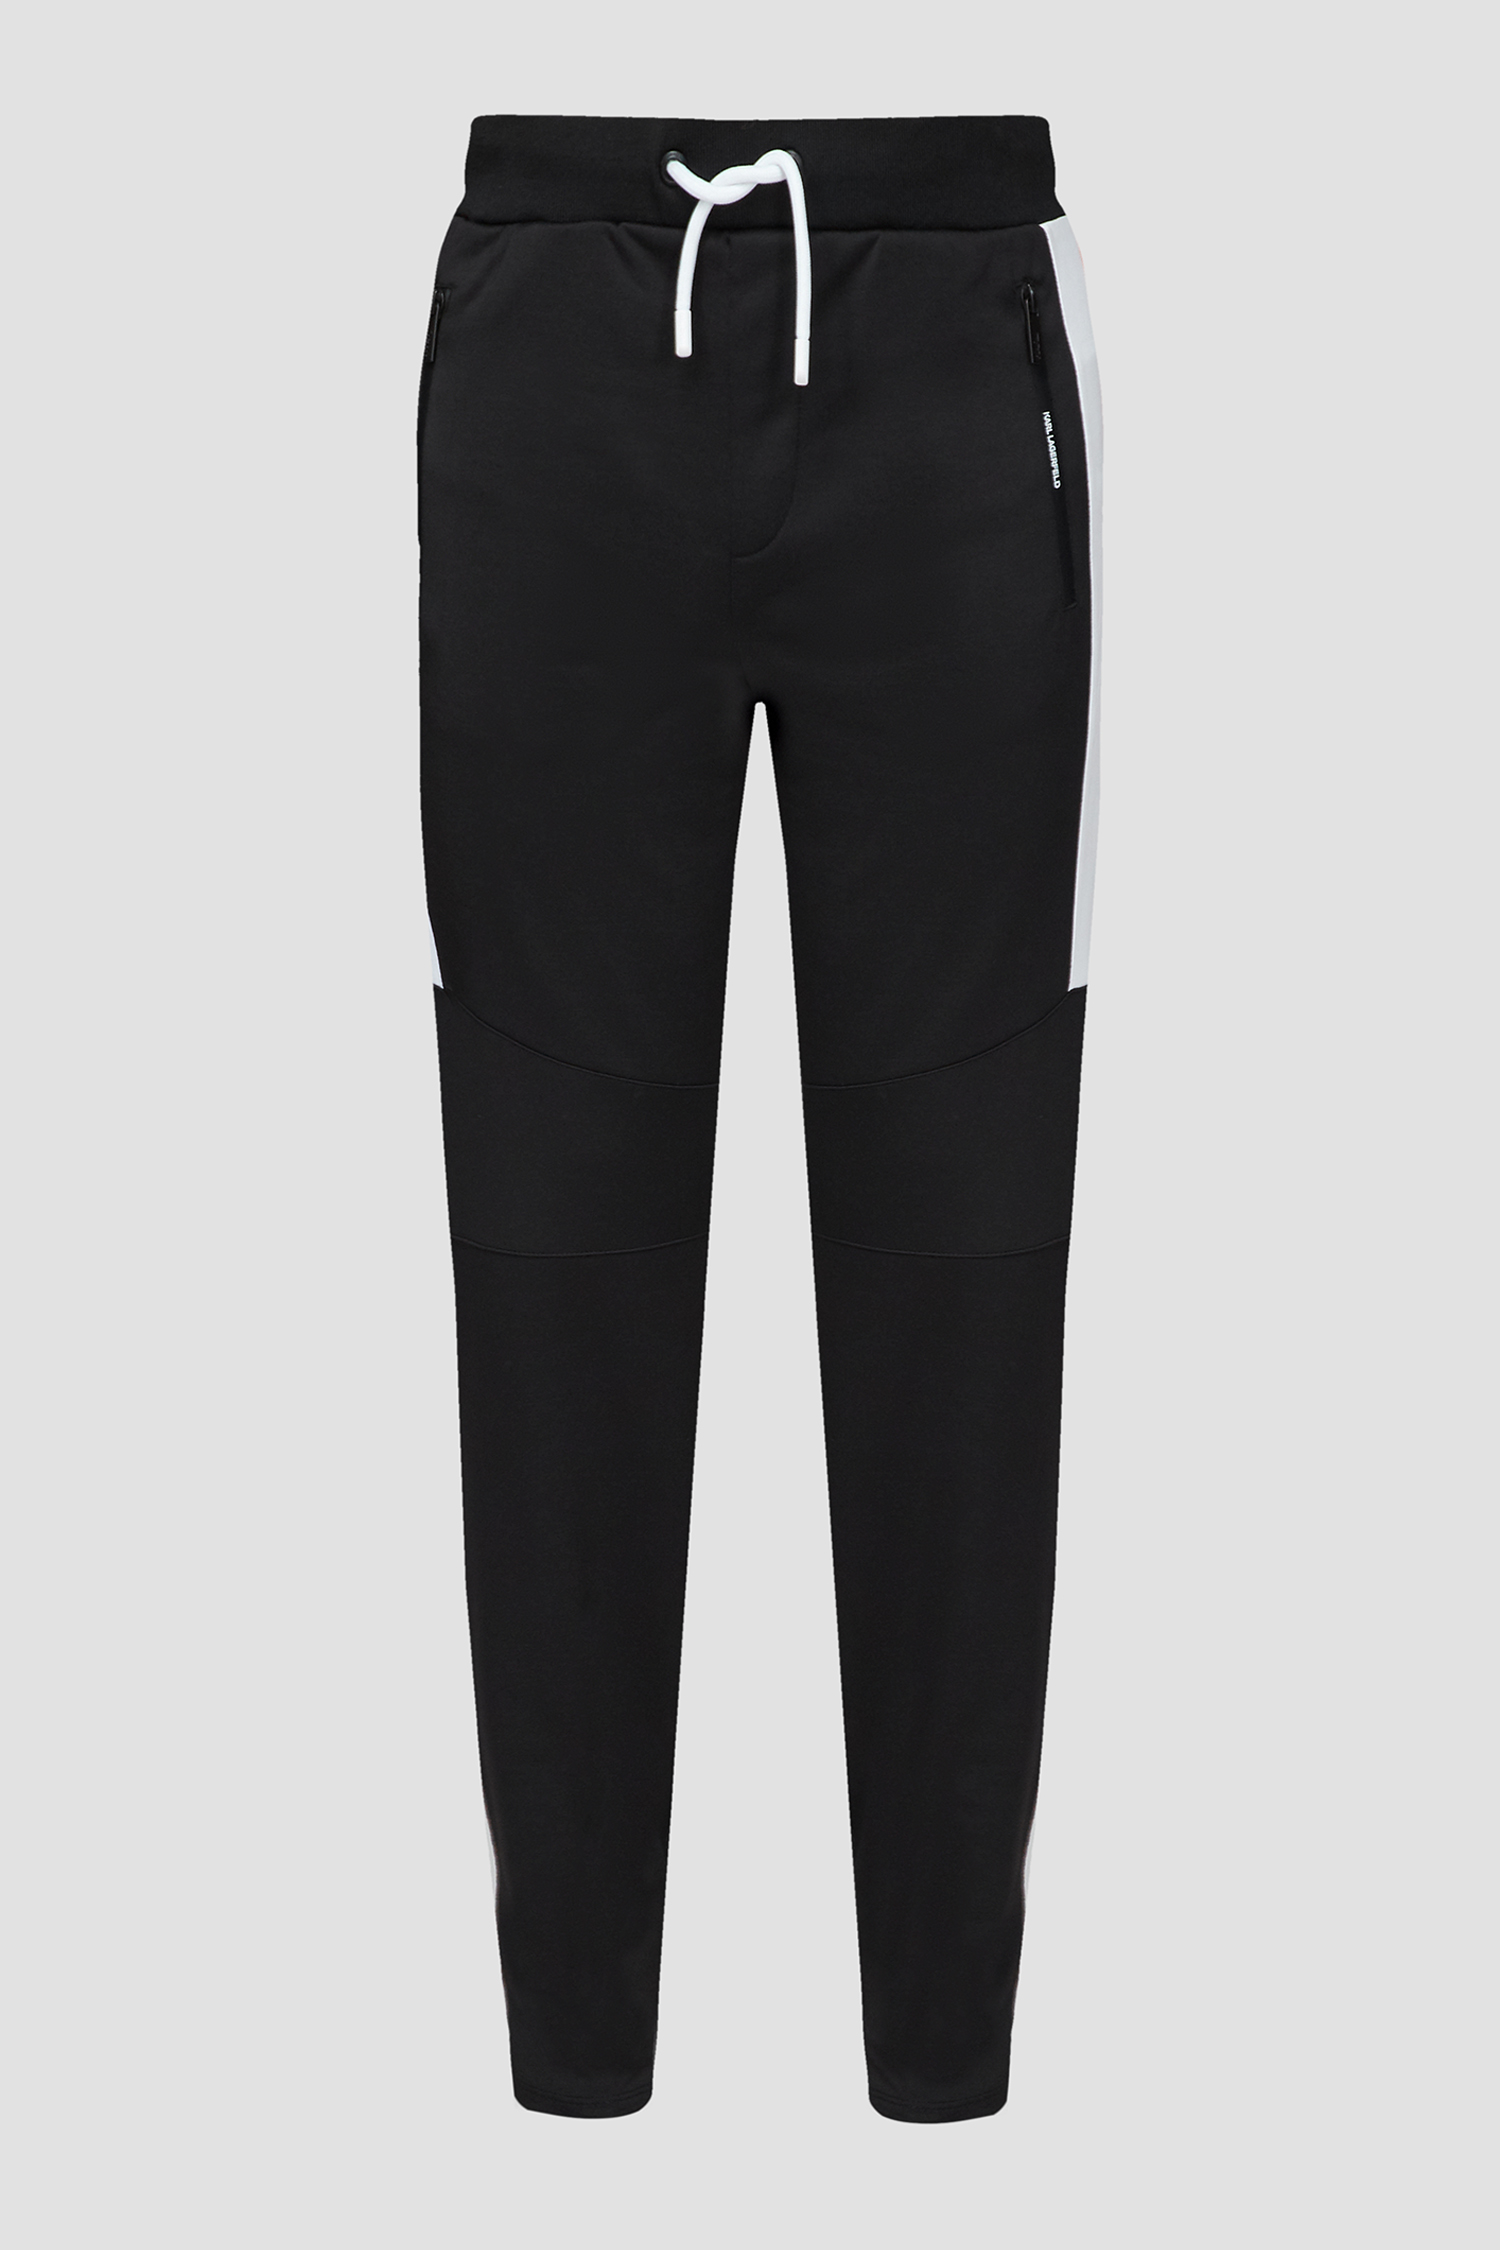 Мужские черные спортивные брюки Karl Lagerfeld 532905.705431;990